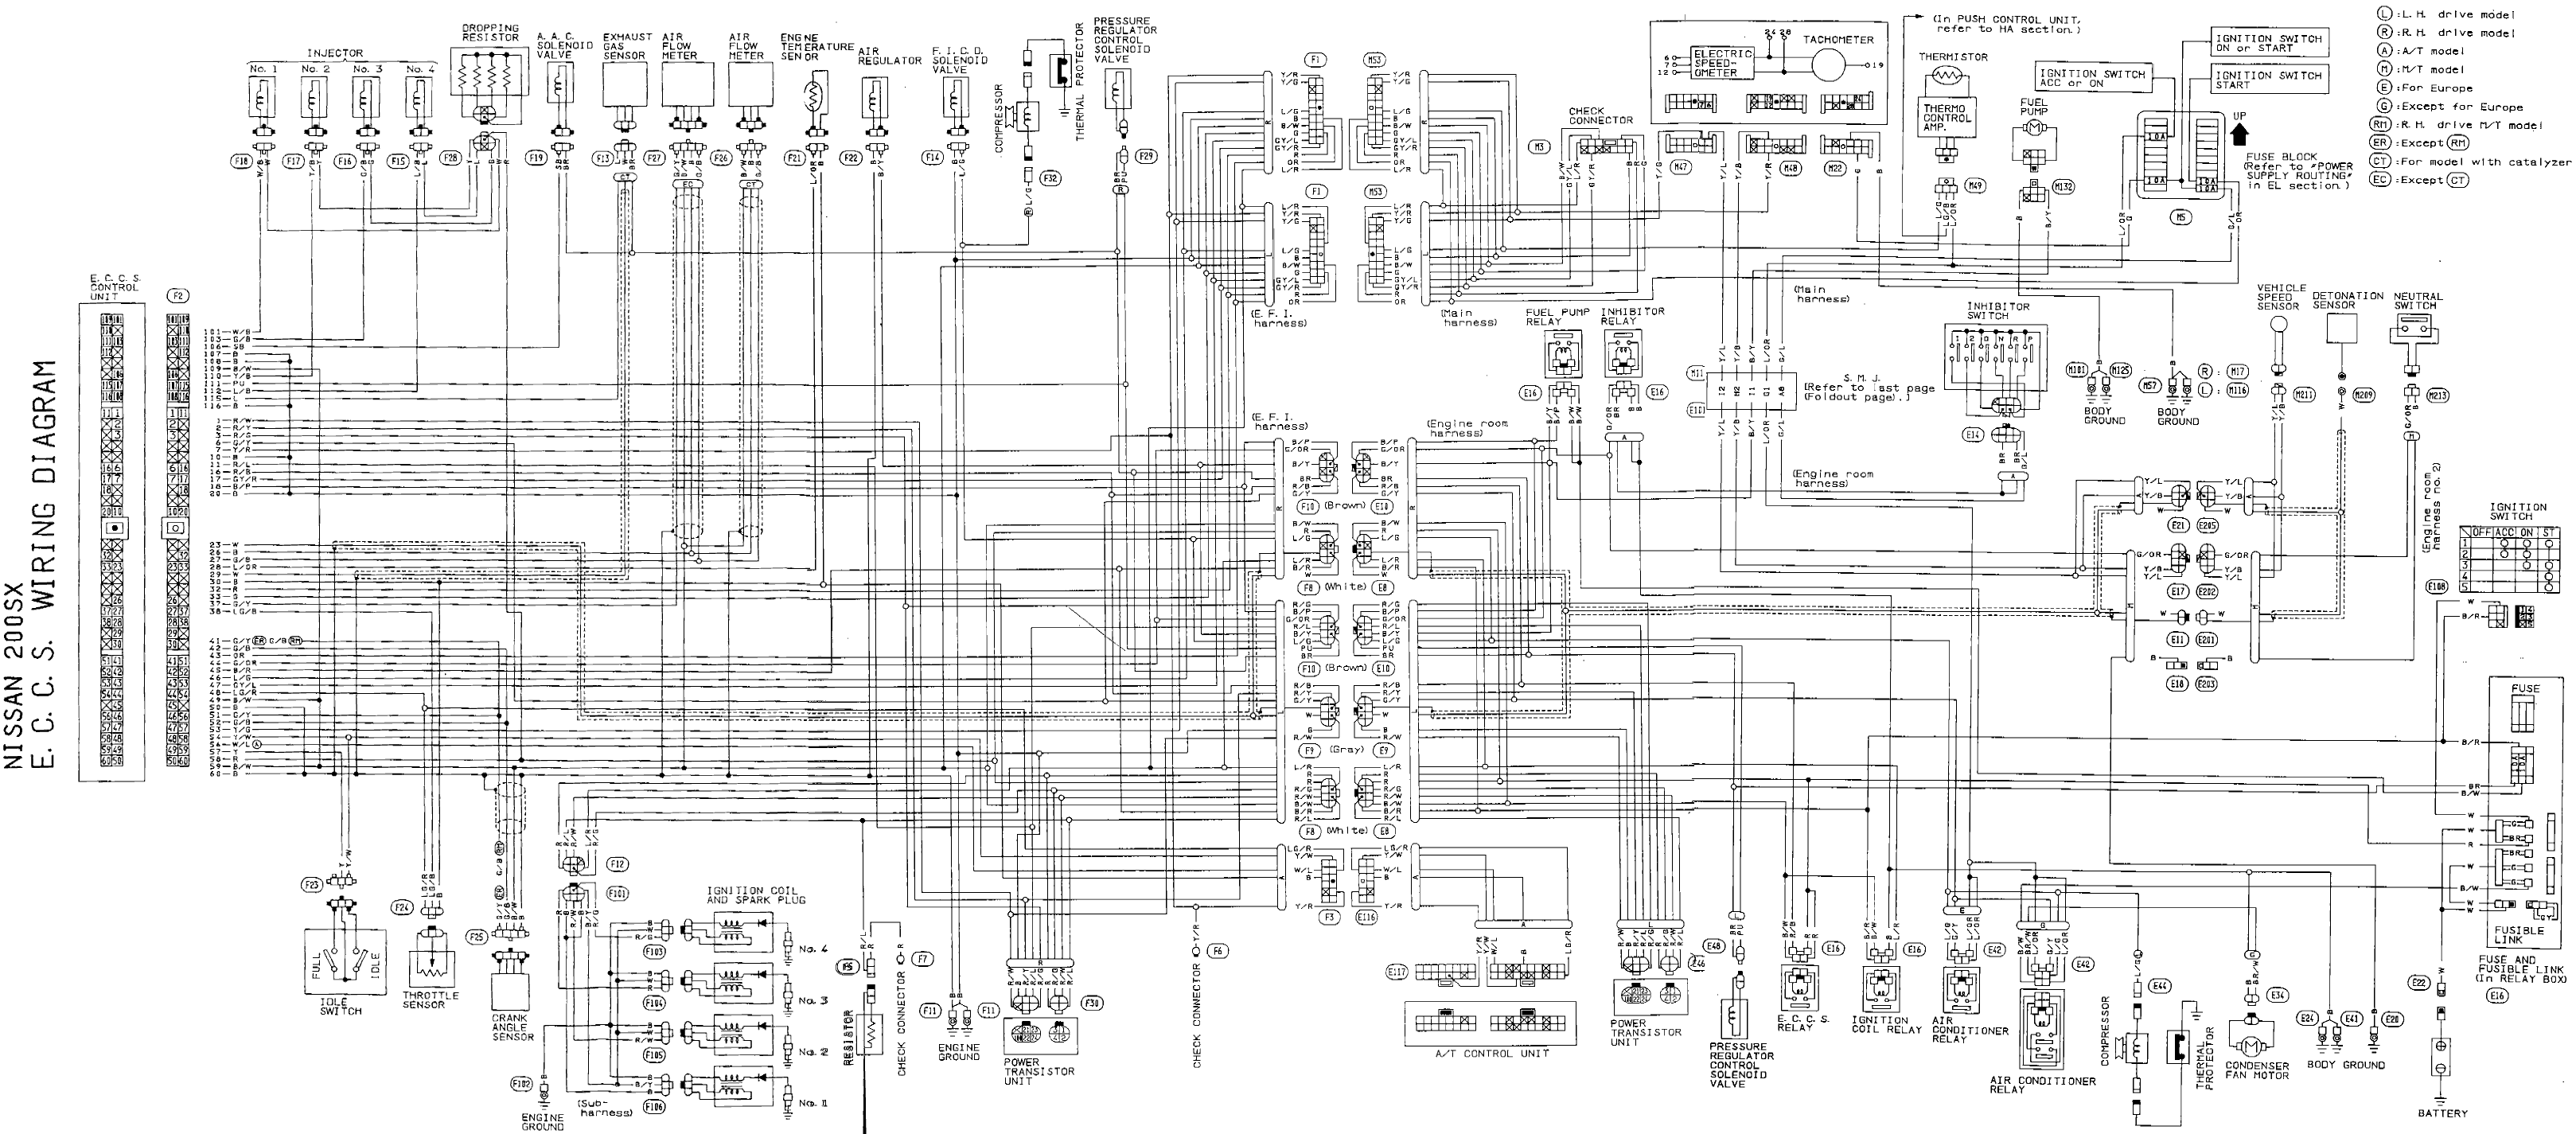 E.C.C.S. Wiring Diagram